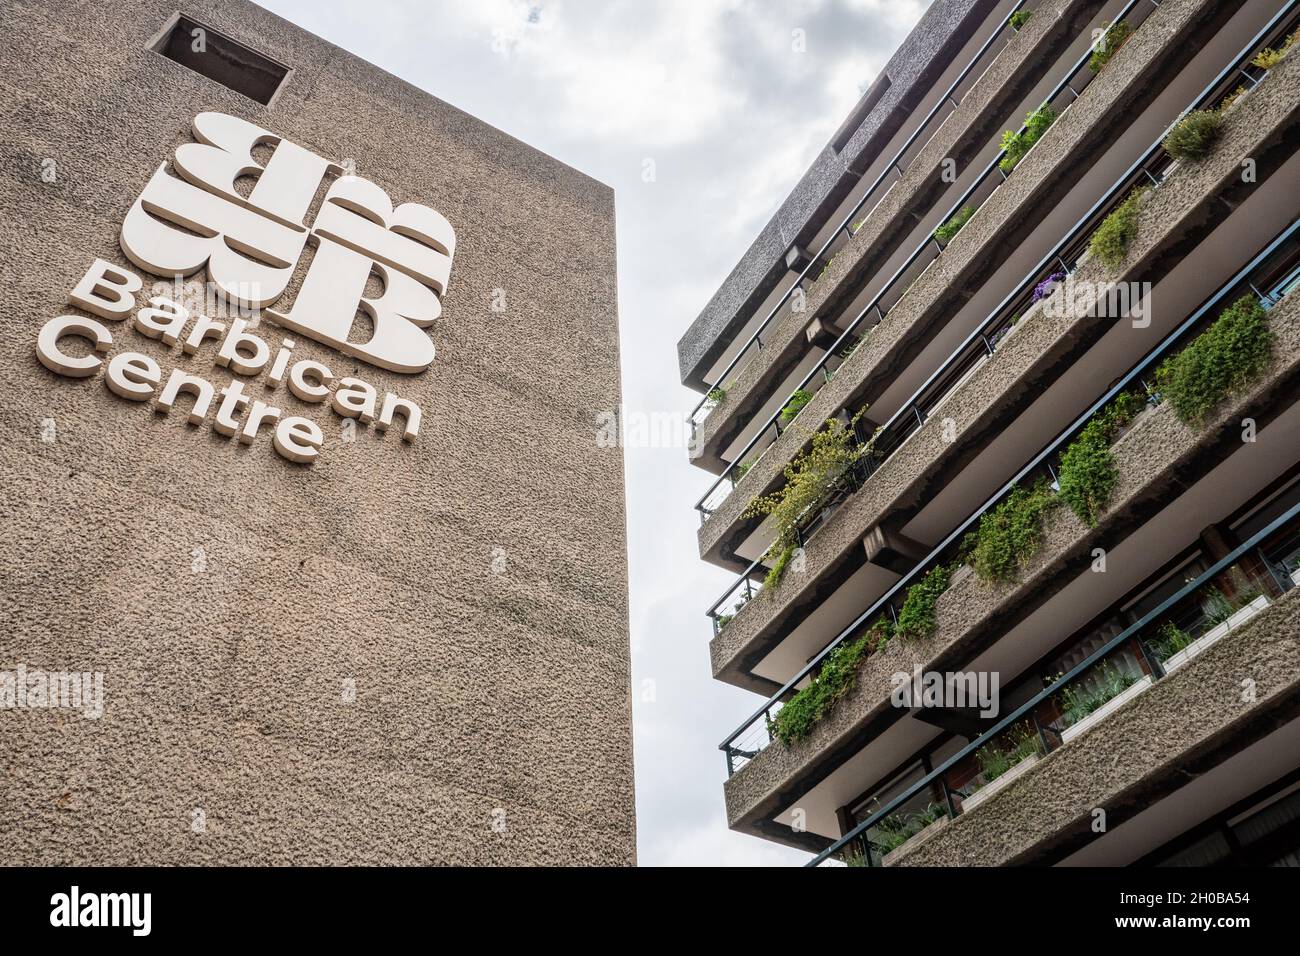 The Barbican Centre, London. Die ikonische brutalistische Betonarchitektur des innerstädtischen Anwesens und des bedeutenden Zentrums für darstellende Kunst. Stockfoto